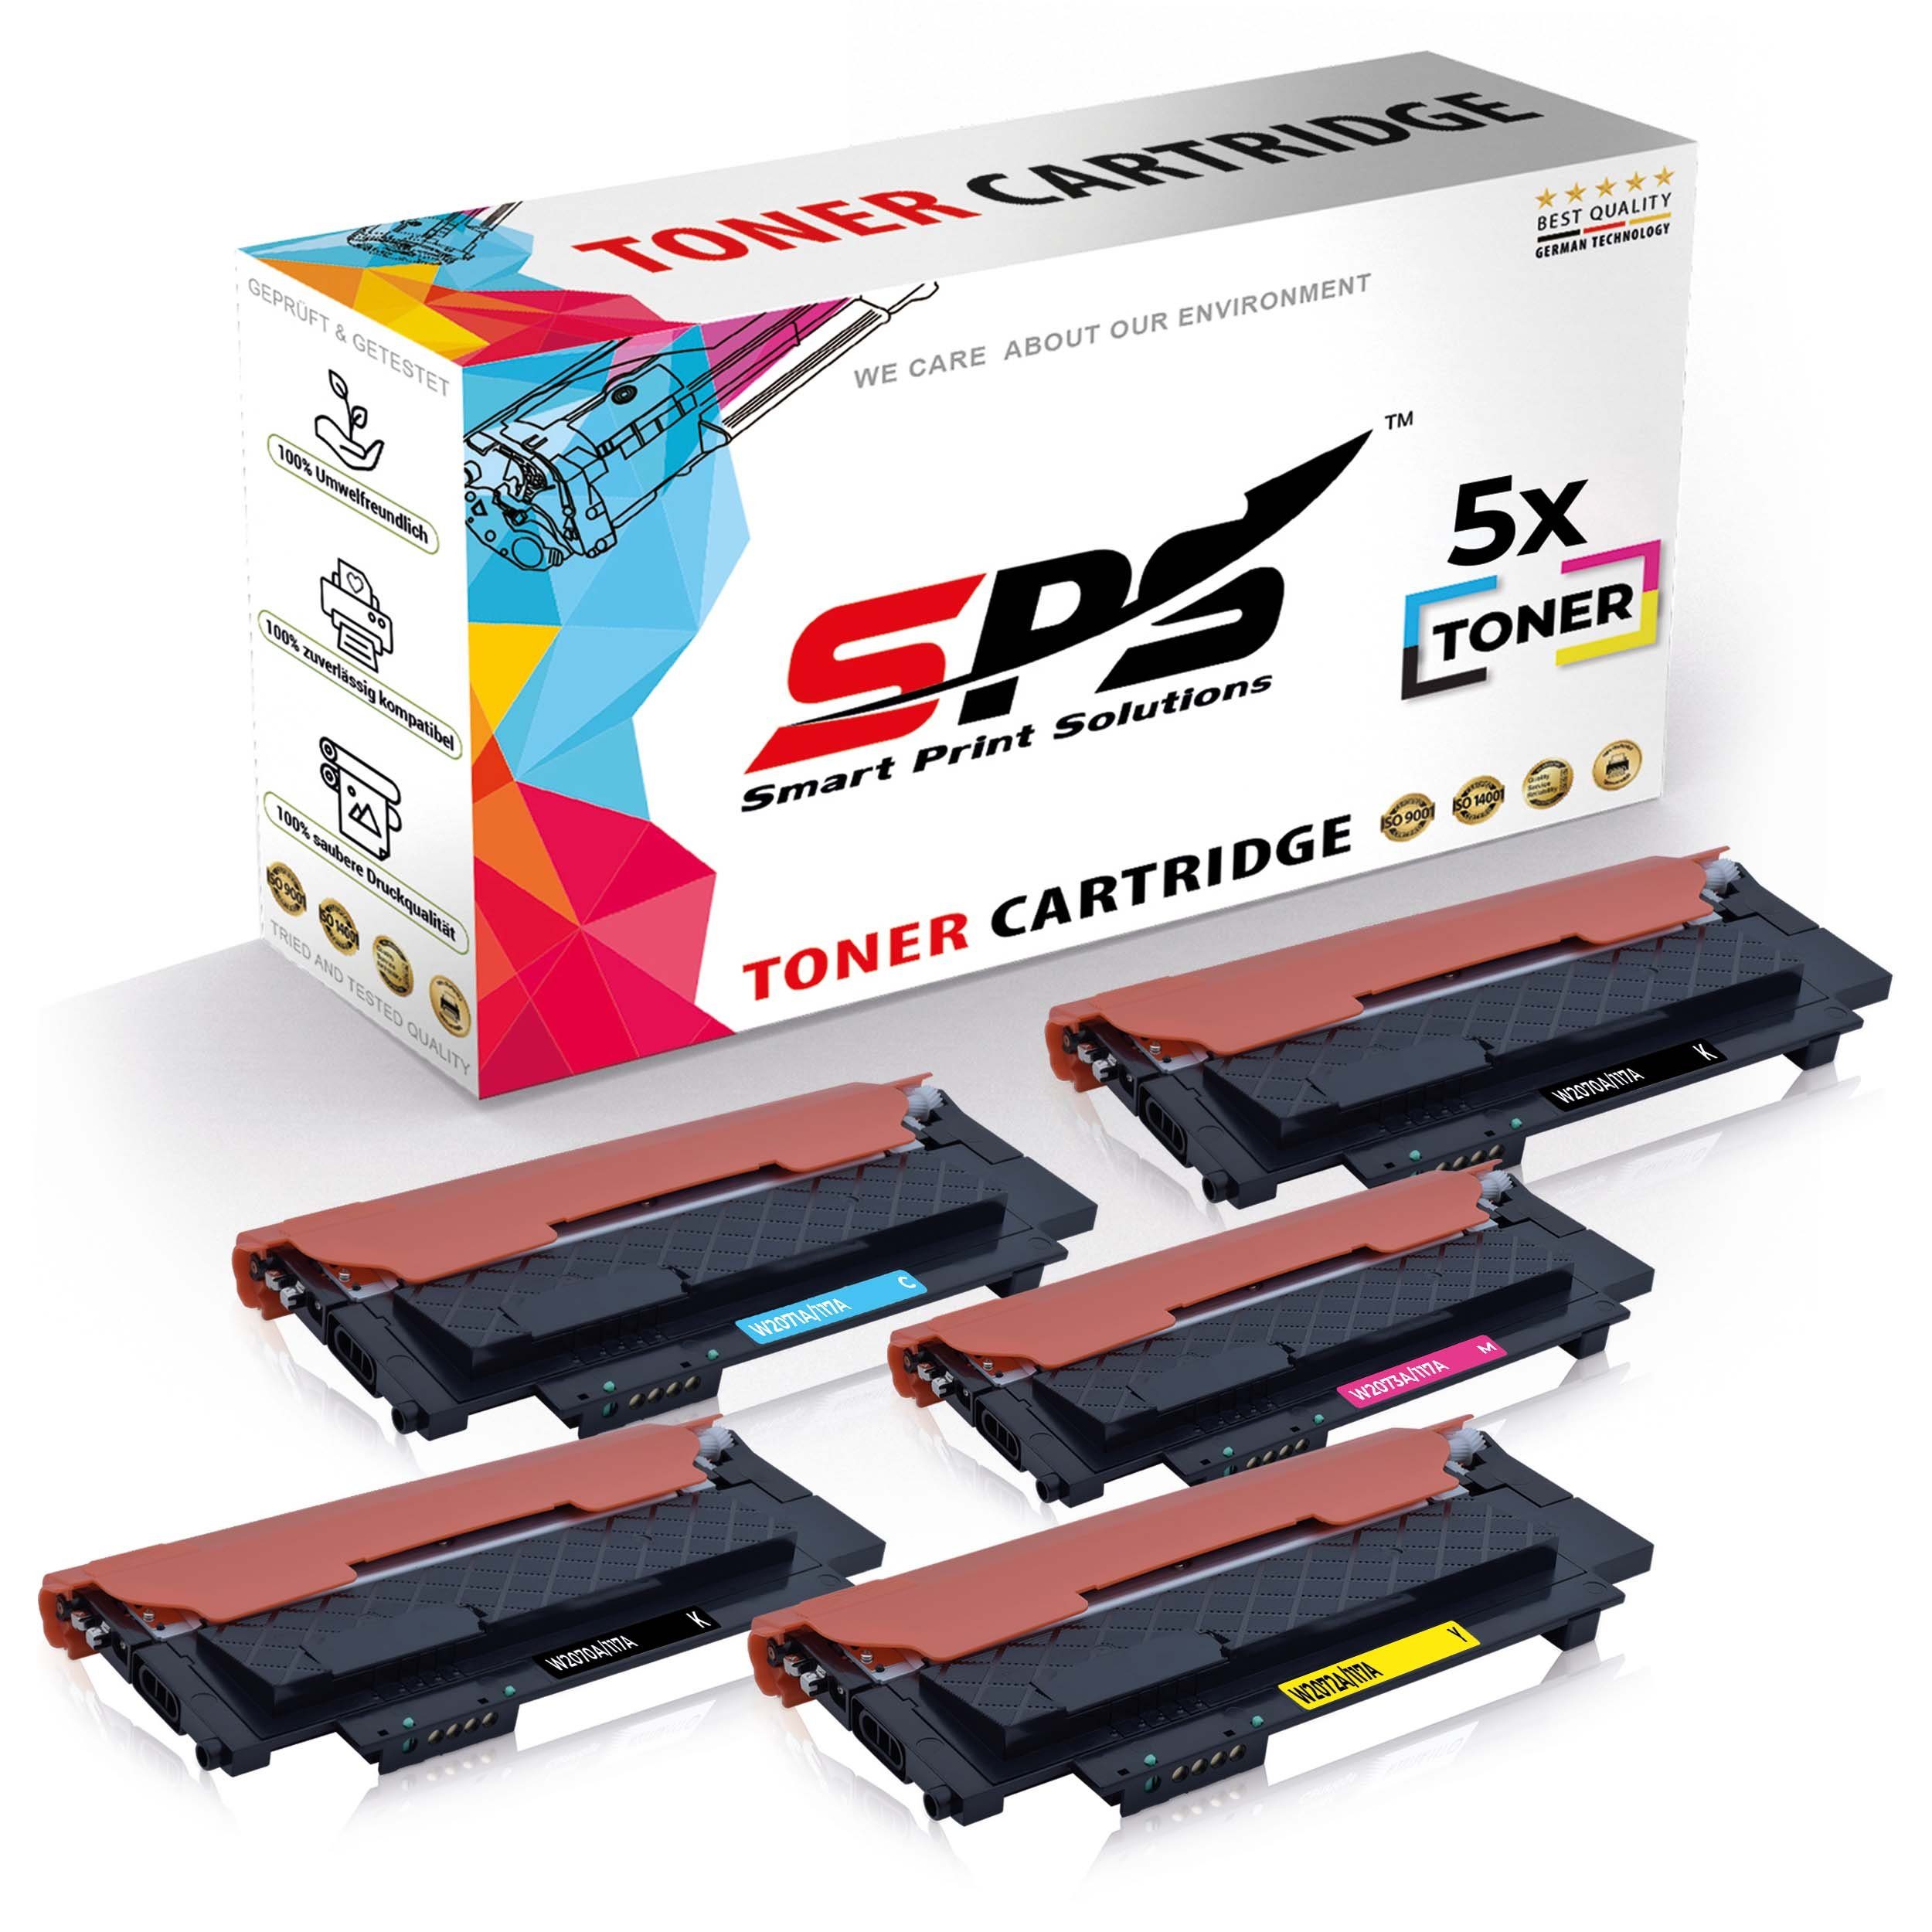 SPS Tonerkartusche 5x Multipack Set Color Pack, (5er HP Kompatibel 5x für Laser, Toner)